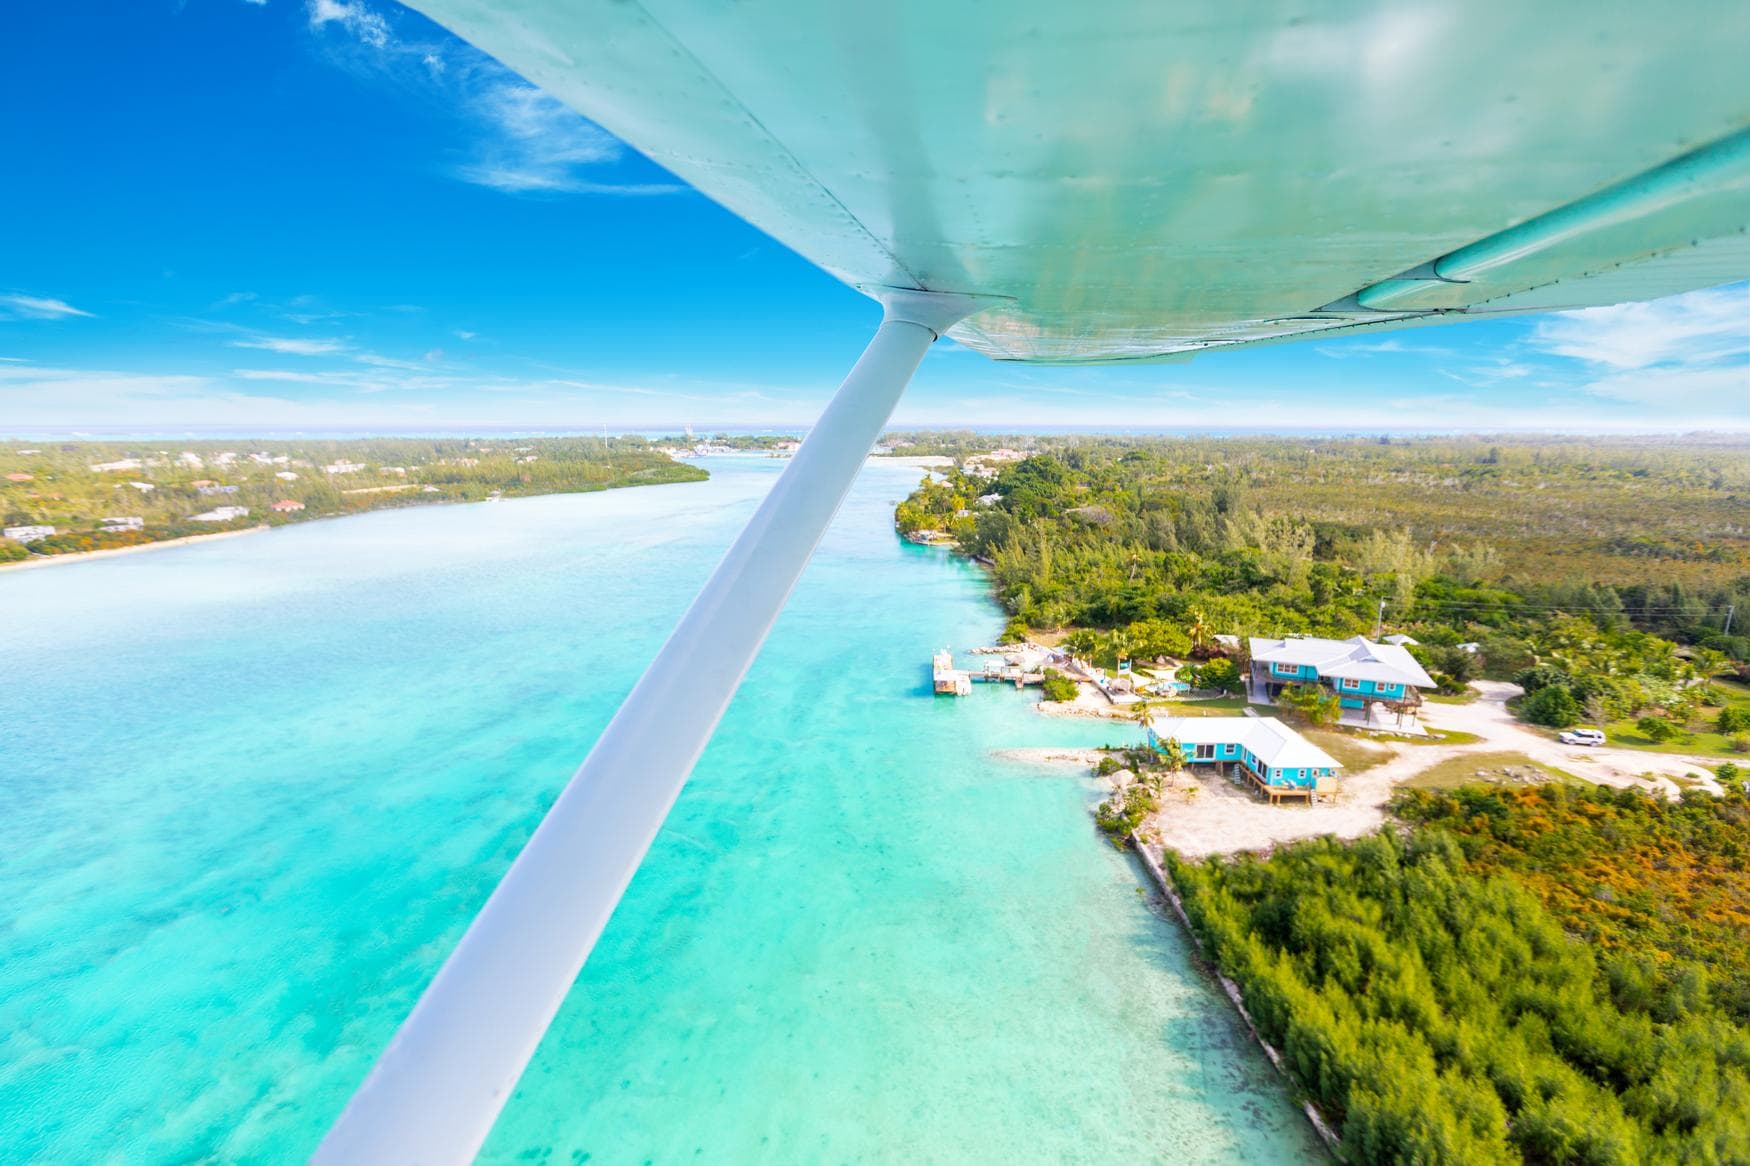 Wasserflugzeug fliegt über die Inseln der Bahamas